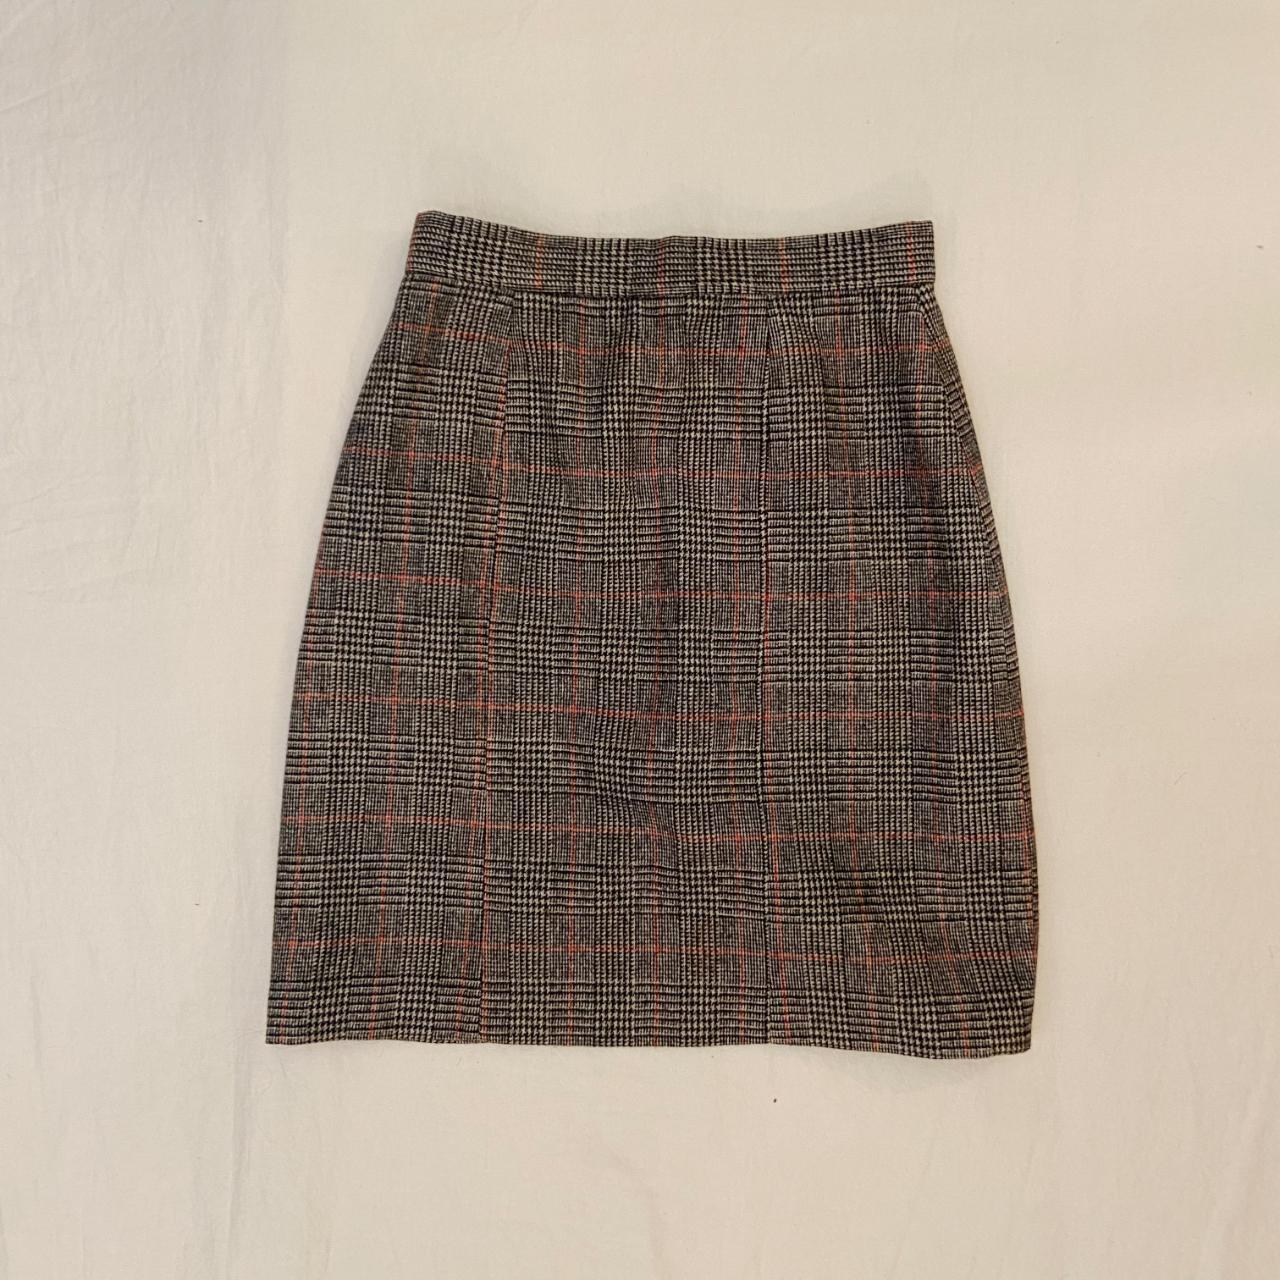 Jean Pascal's Plaid Skirt Waist: 26